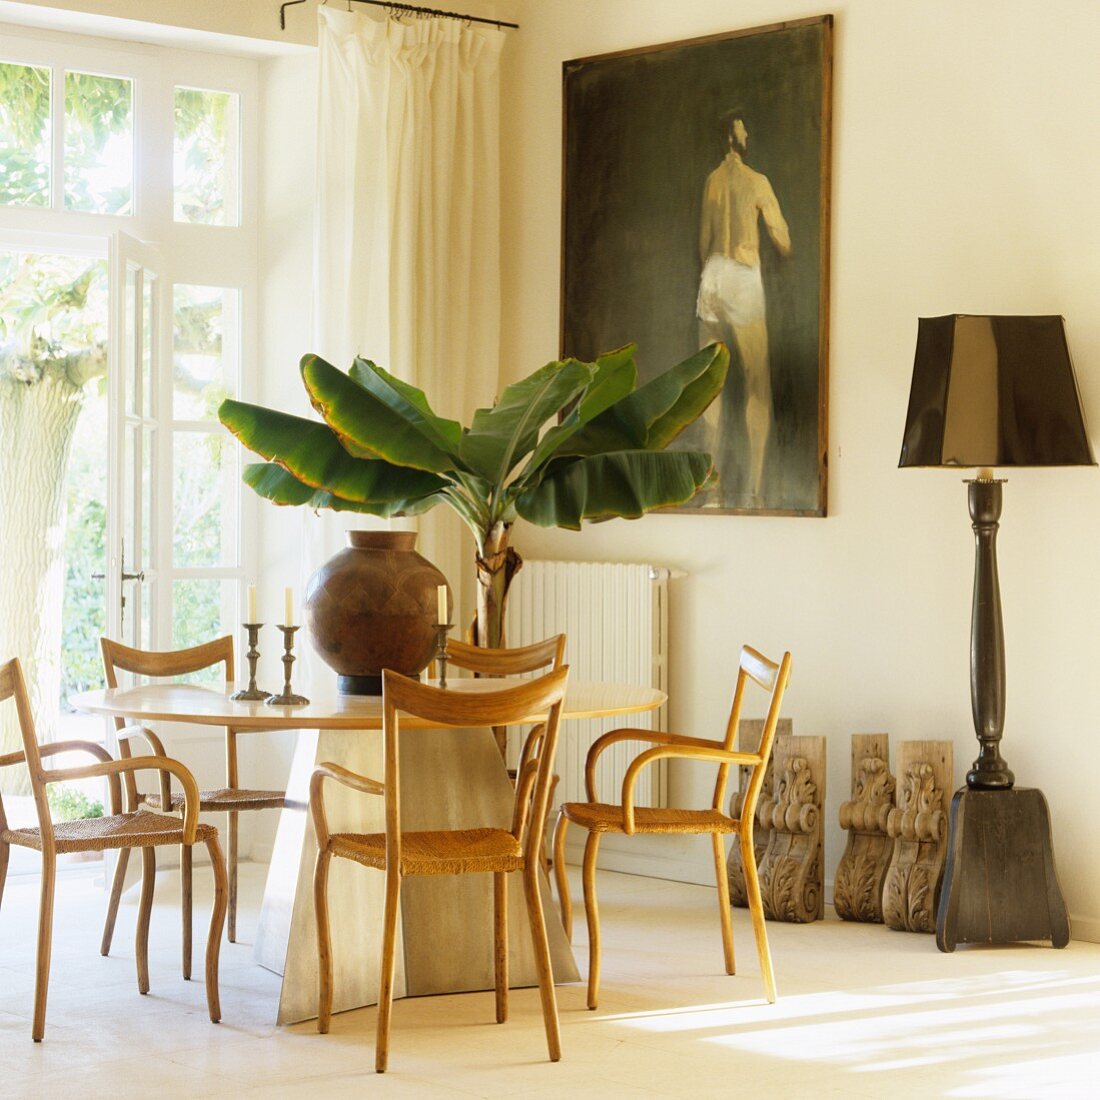 Zierliche Holzstühle vor modernem Tisch und Bananenbaum im Topf gegenüber Ölgemälde an Wand